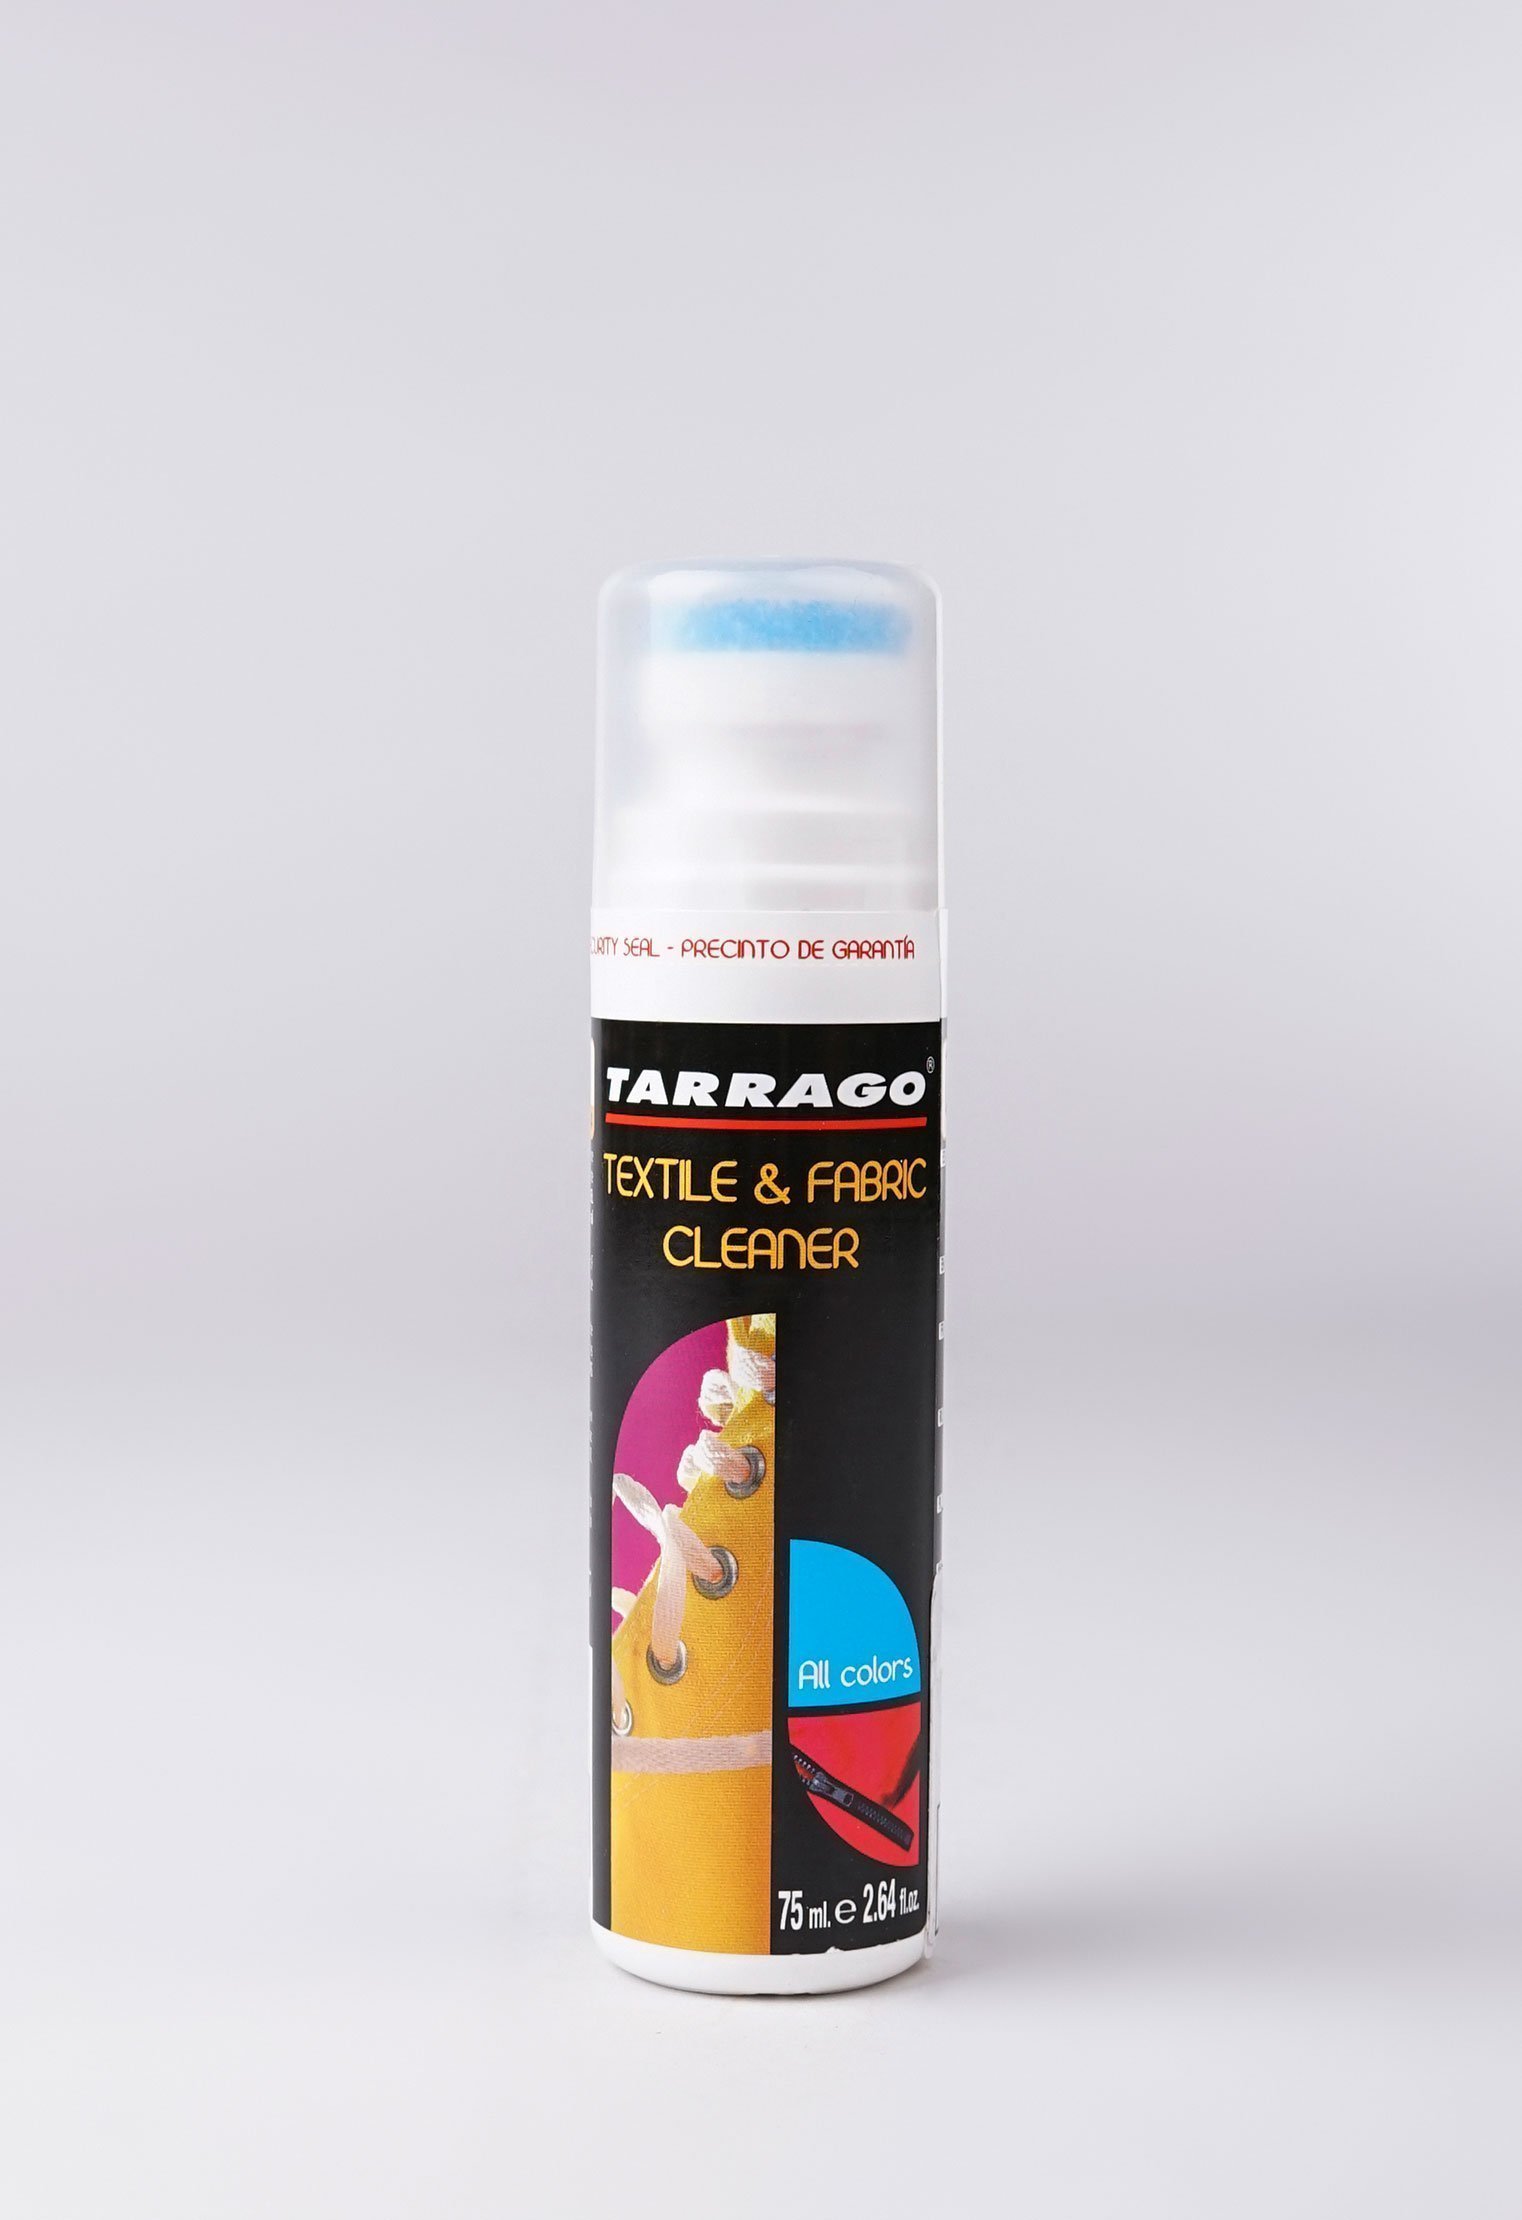 Шампуни и очистители 20-1057 TARRAGO - Очиститель для текстиля TEXTIL CLEANER, флакон, 75мл. пена очиститель шампунь для обуви tarrago